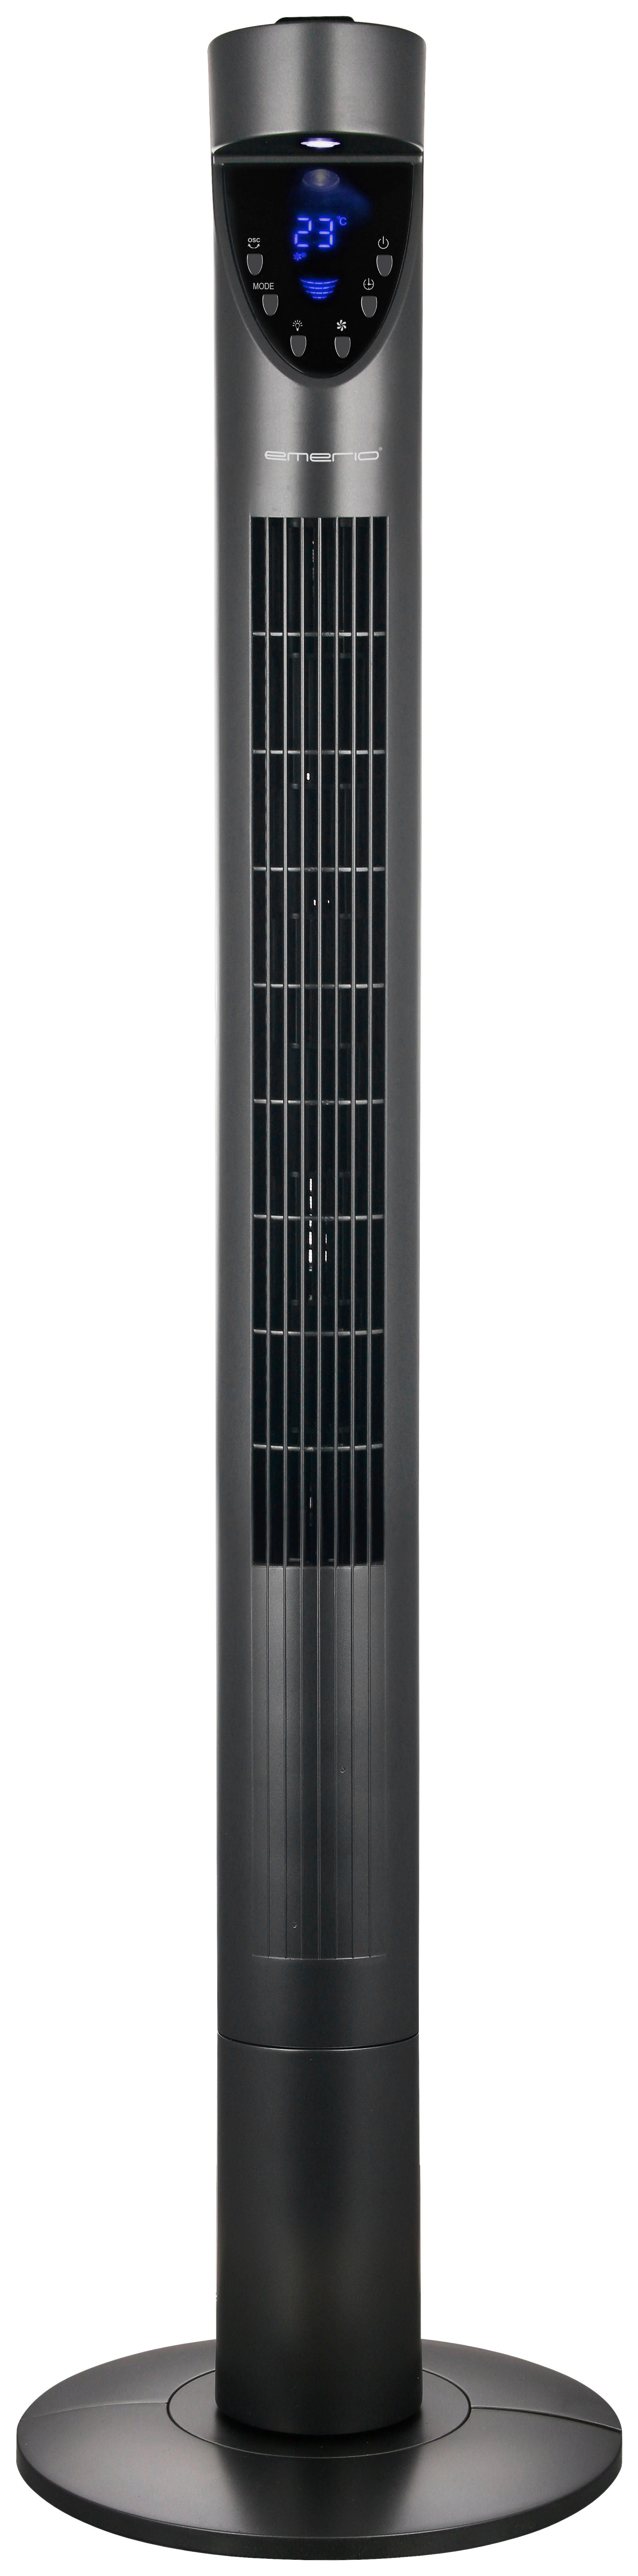 Emerio Turmventilator FN-114569.3 titanfarbig Kunststoff H: ca. 120 cm Turmventilator - titanfarbig (120,00cm)